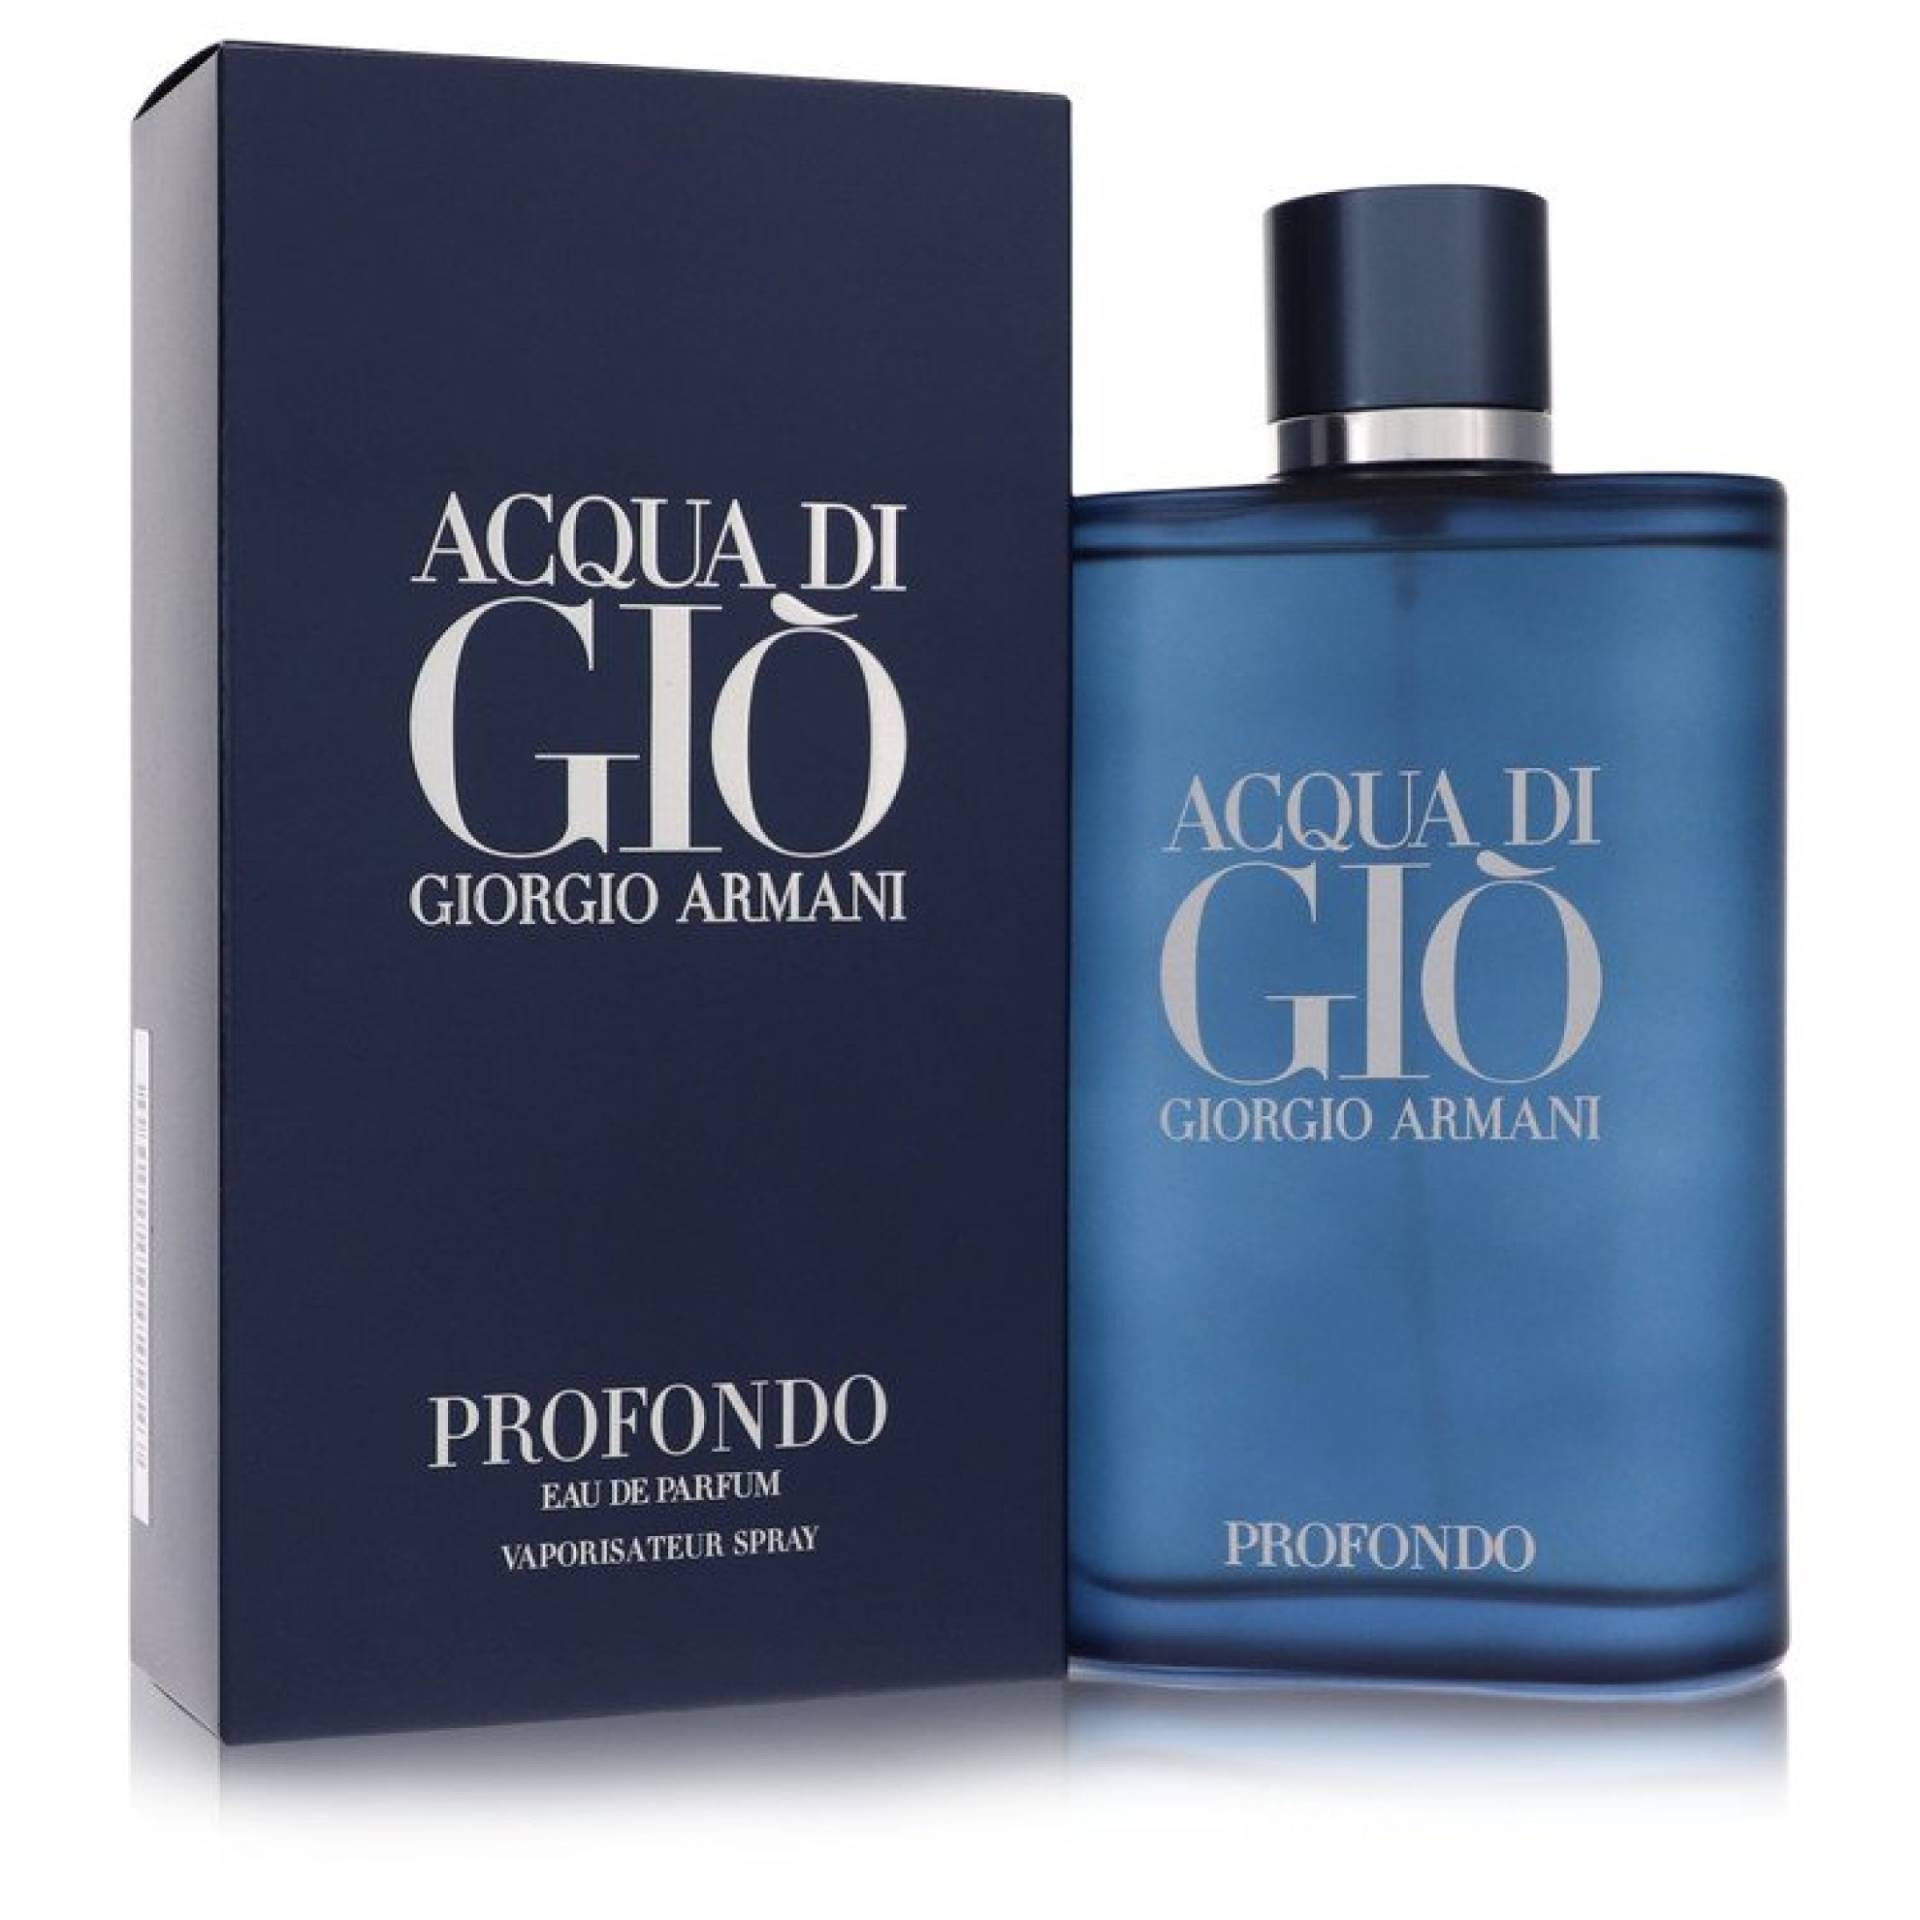 Giorgio Armani Acqua Di Gio Profondo Eau De Parfum Spray 200 ml von Giorgio Armani